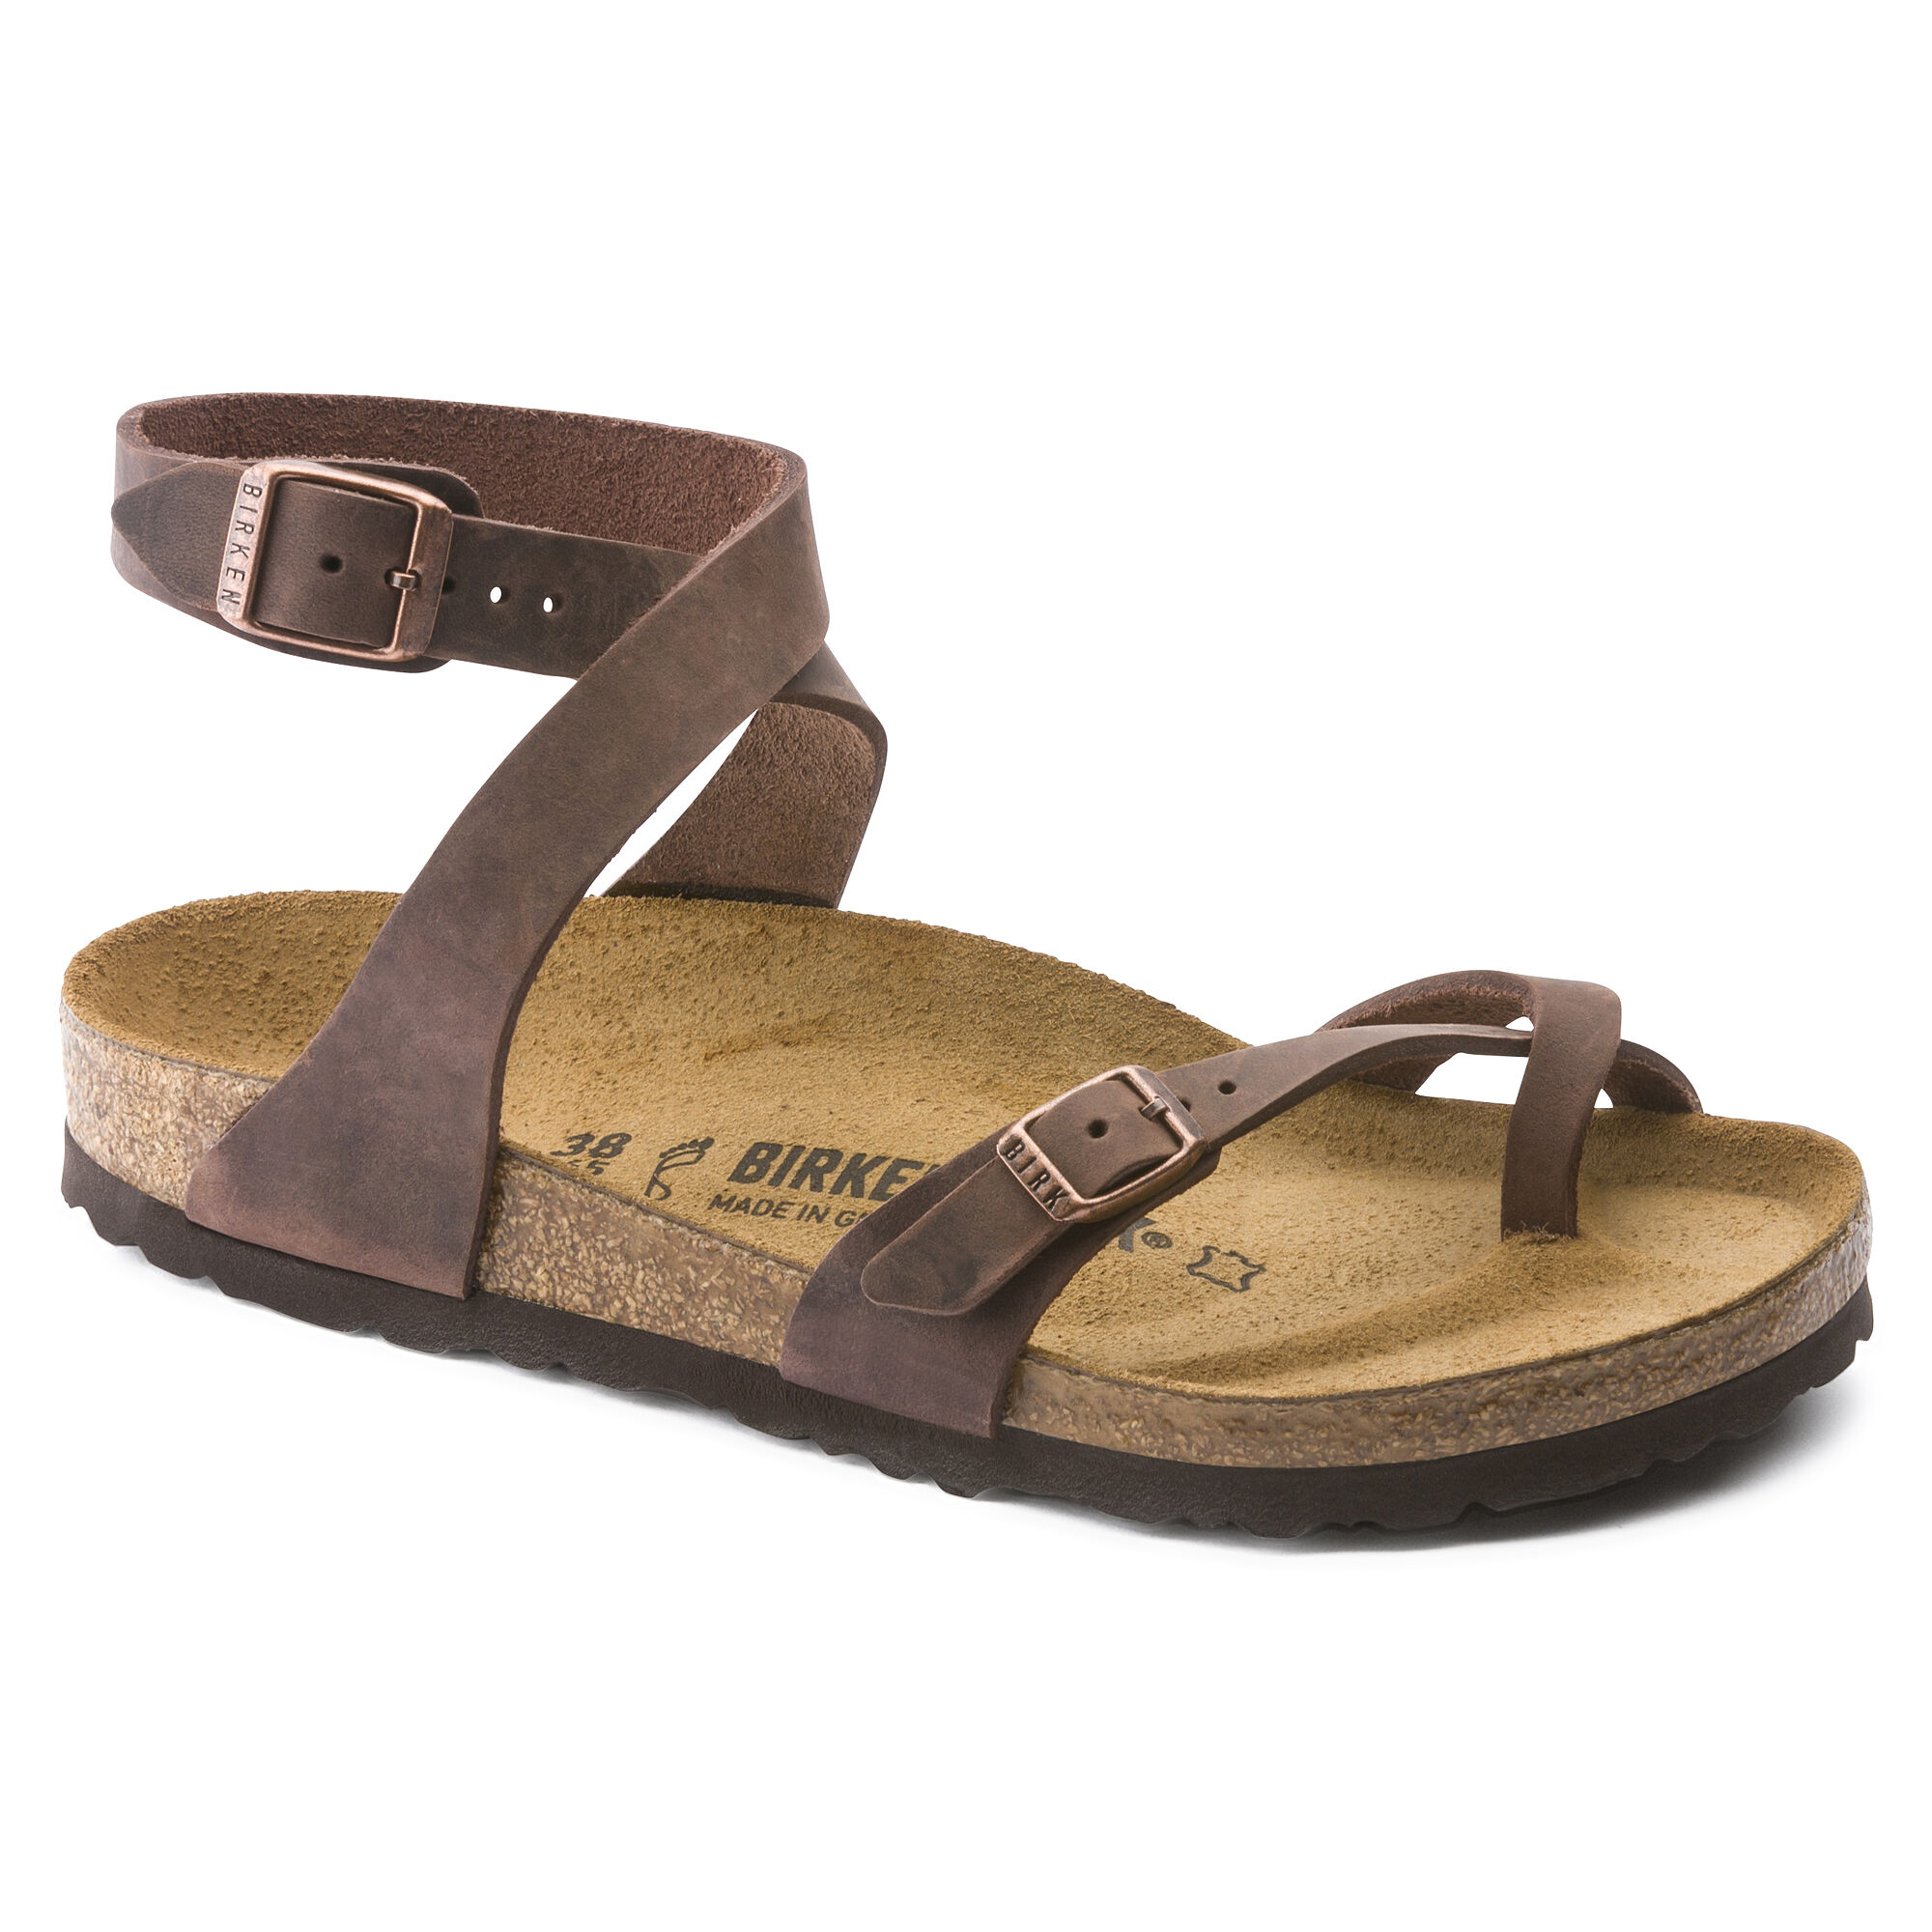 birkenstock sandals with heel strap